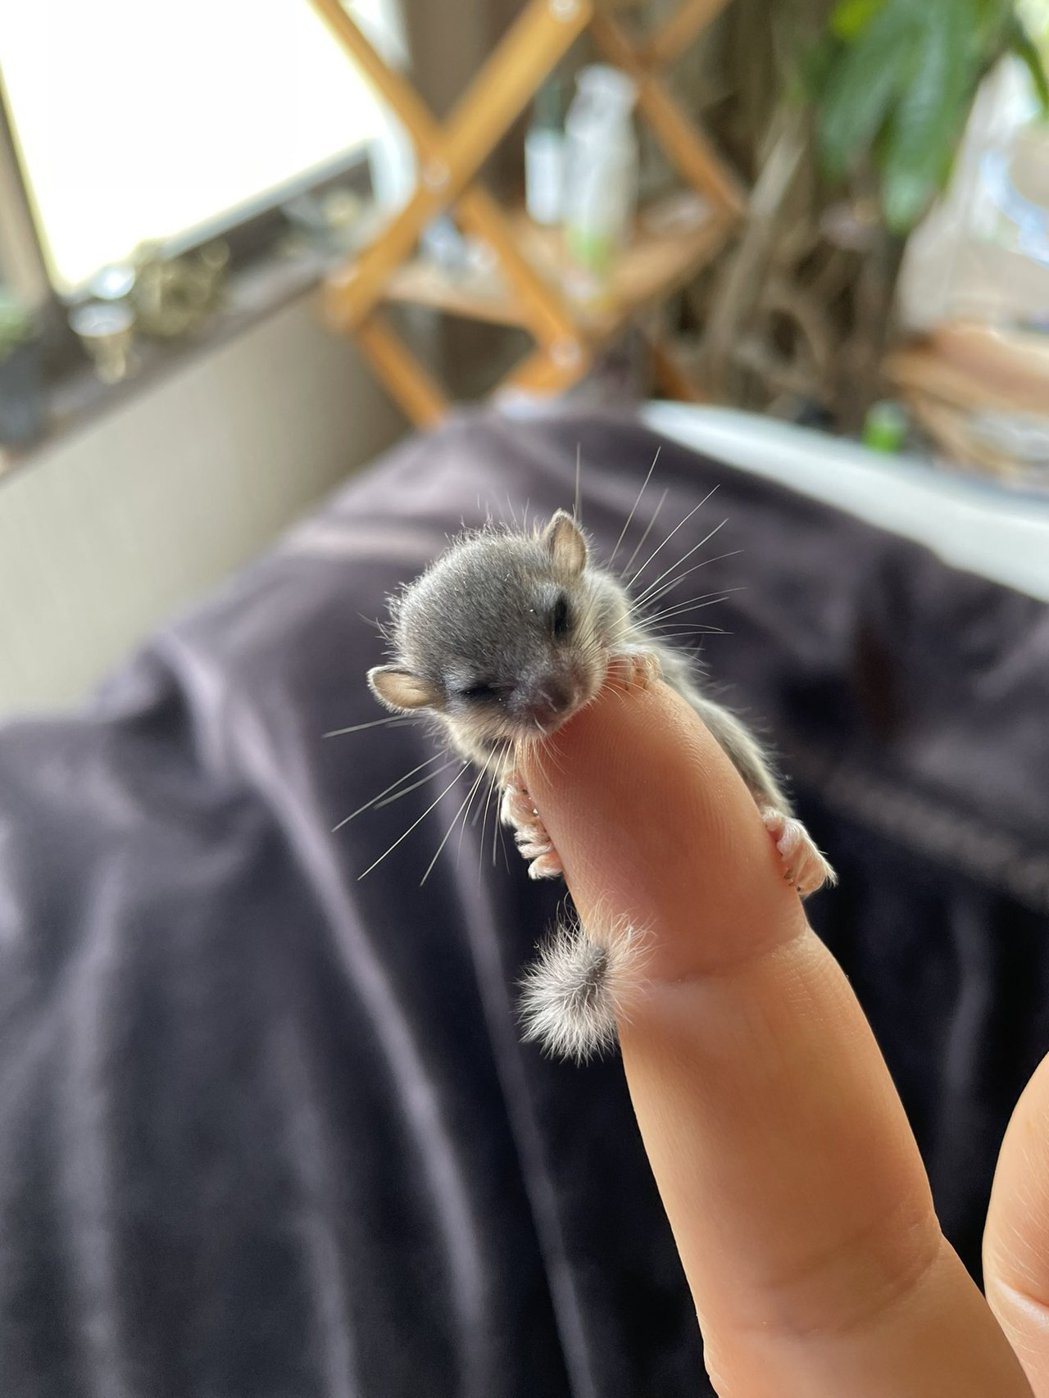 網友曬出幼幼睡鼠在指尖上的樣子。圖擷自@johny432